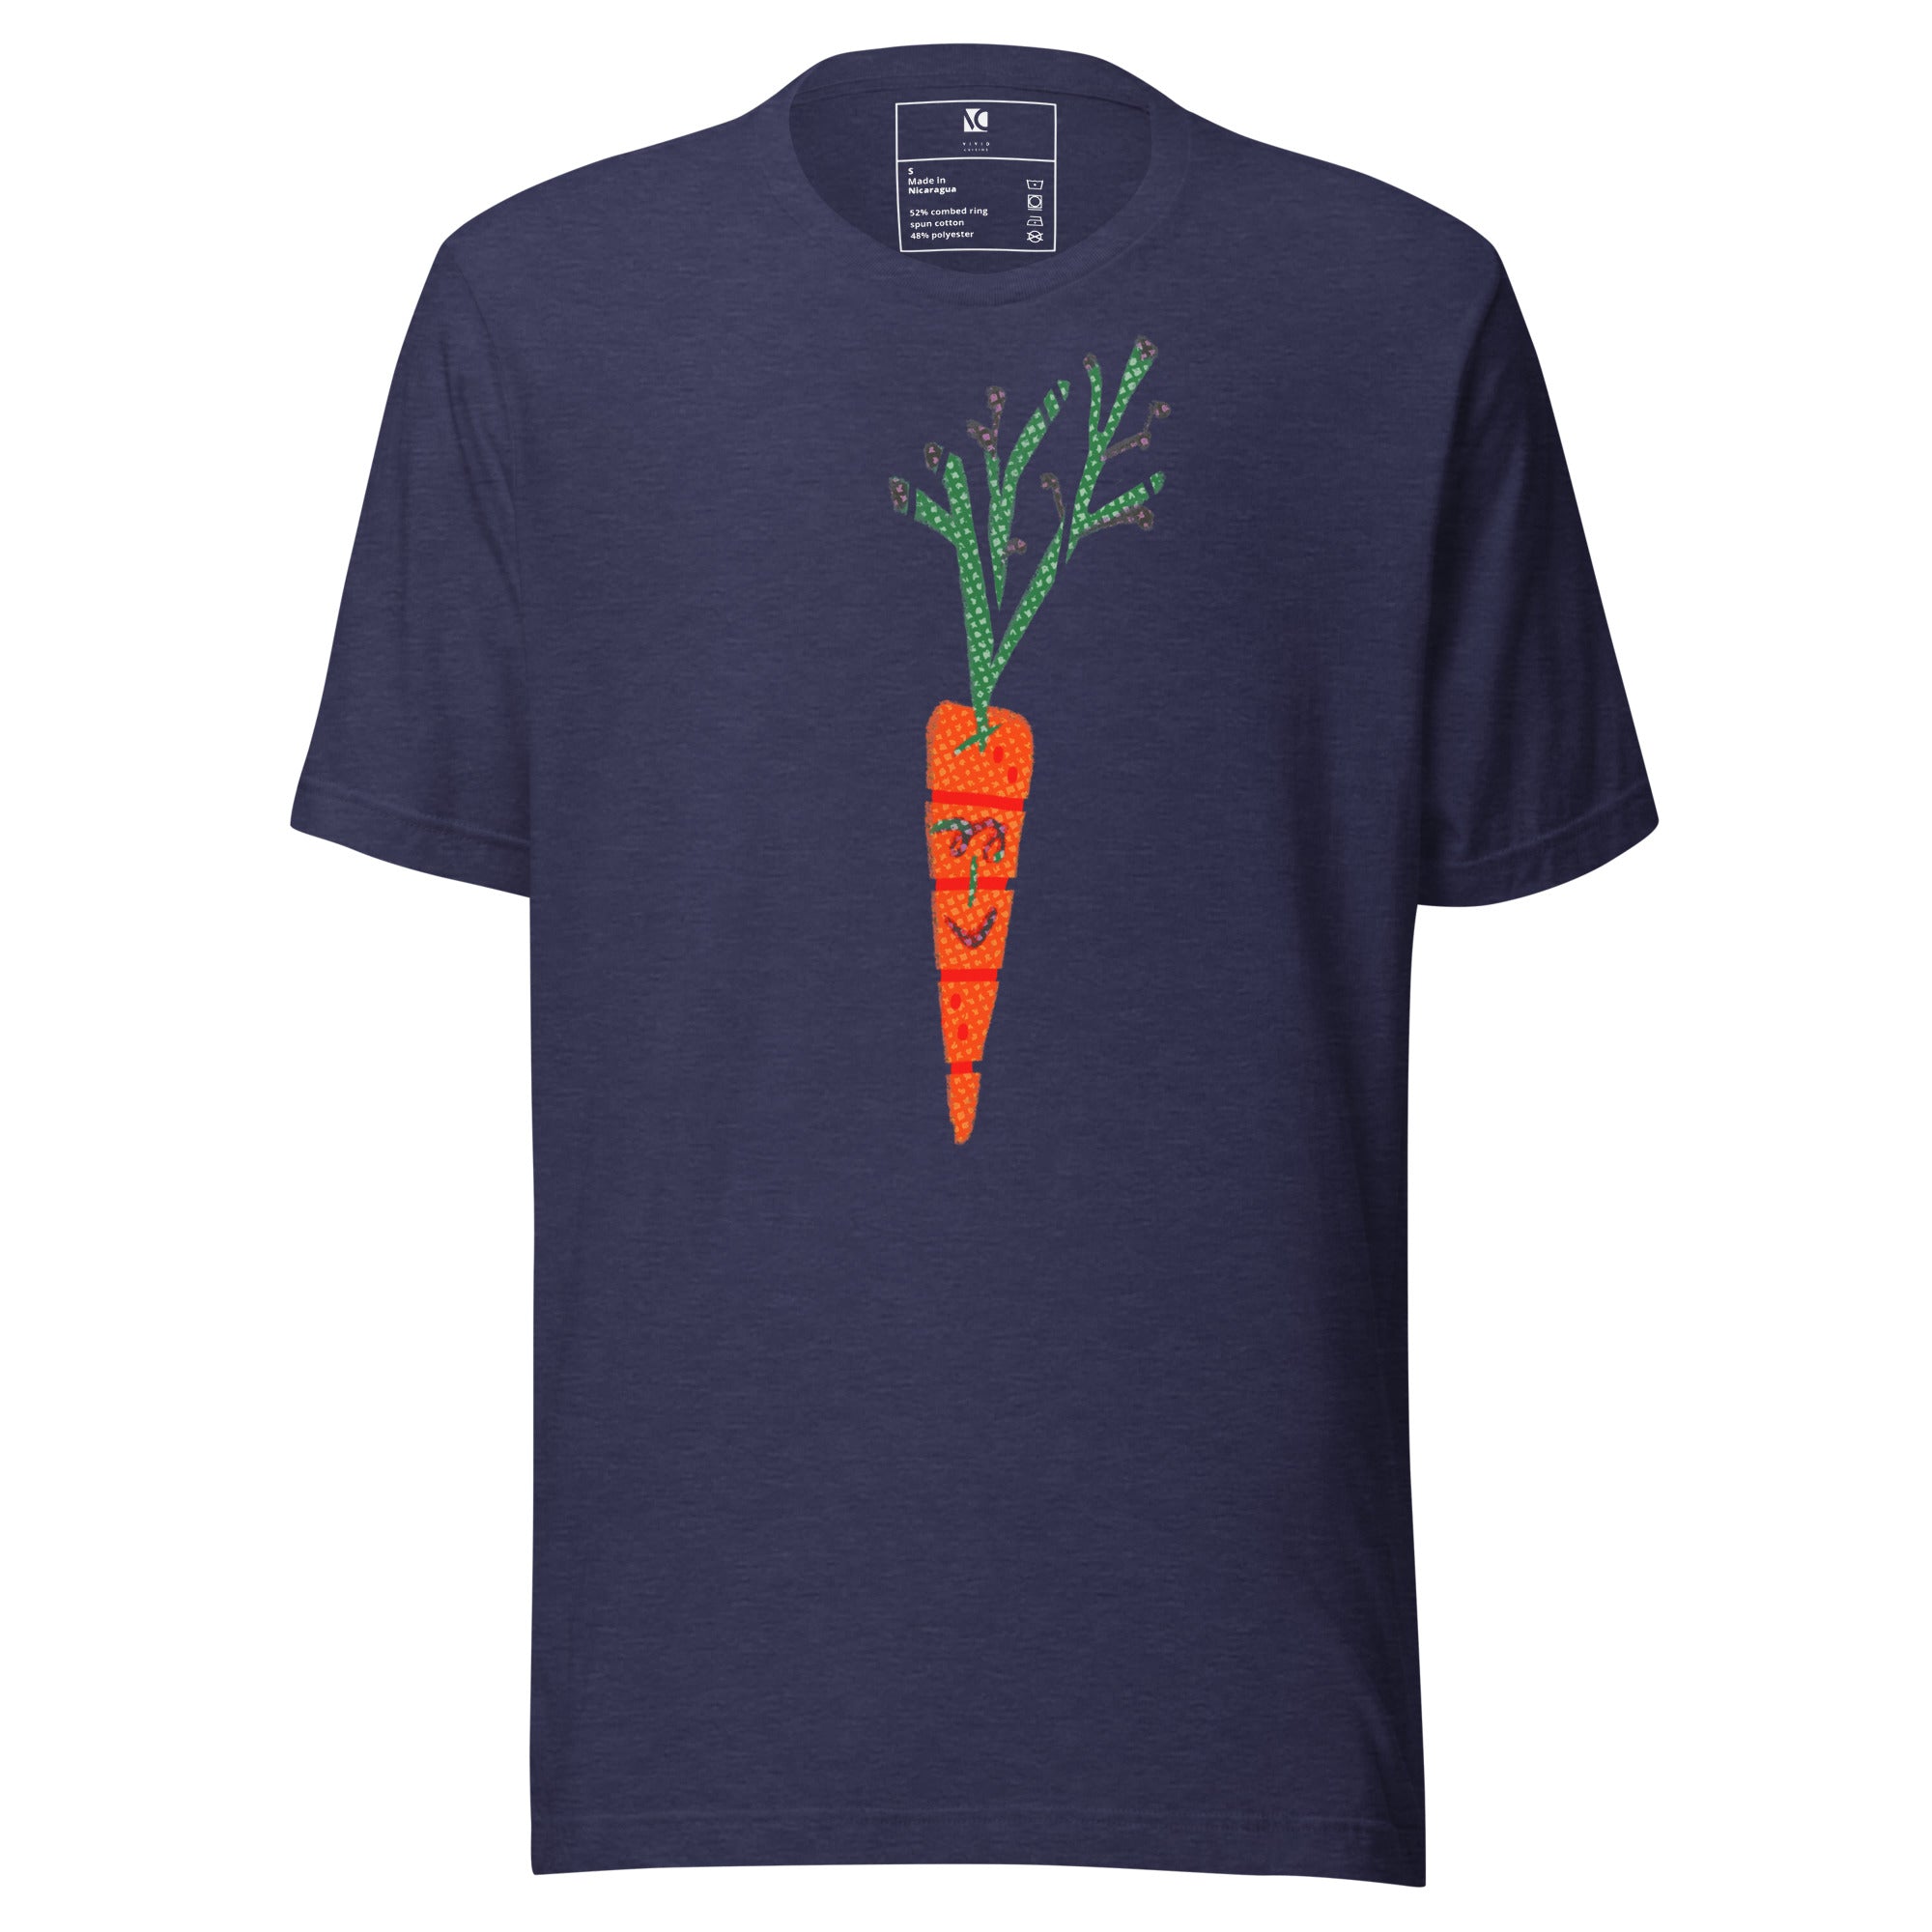 Zanahoria - Unisex T-Shirt